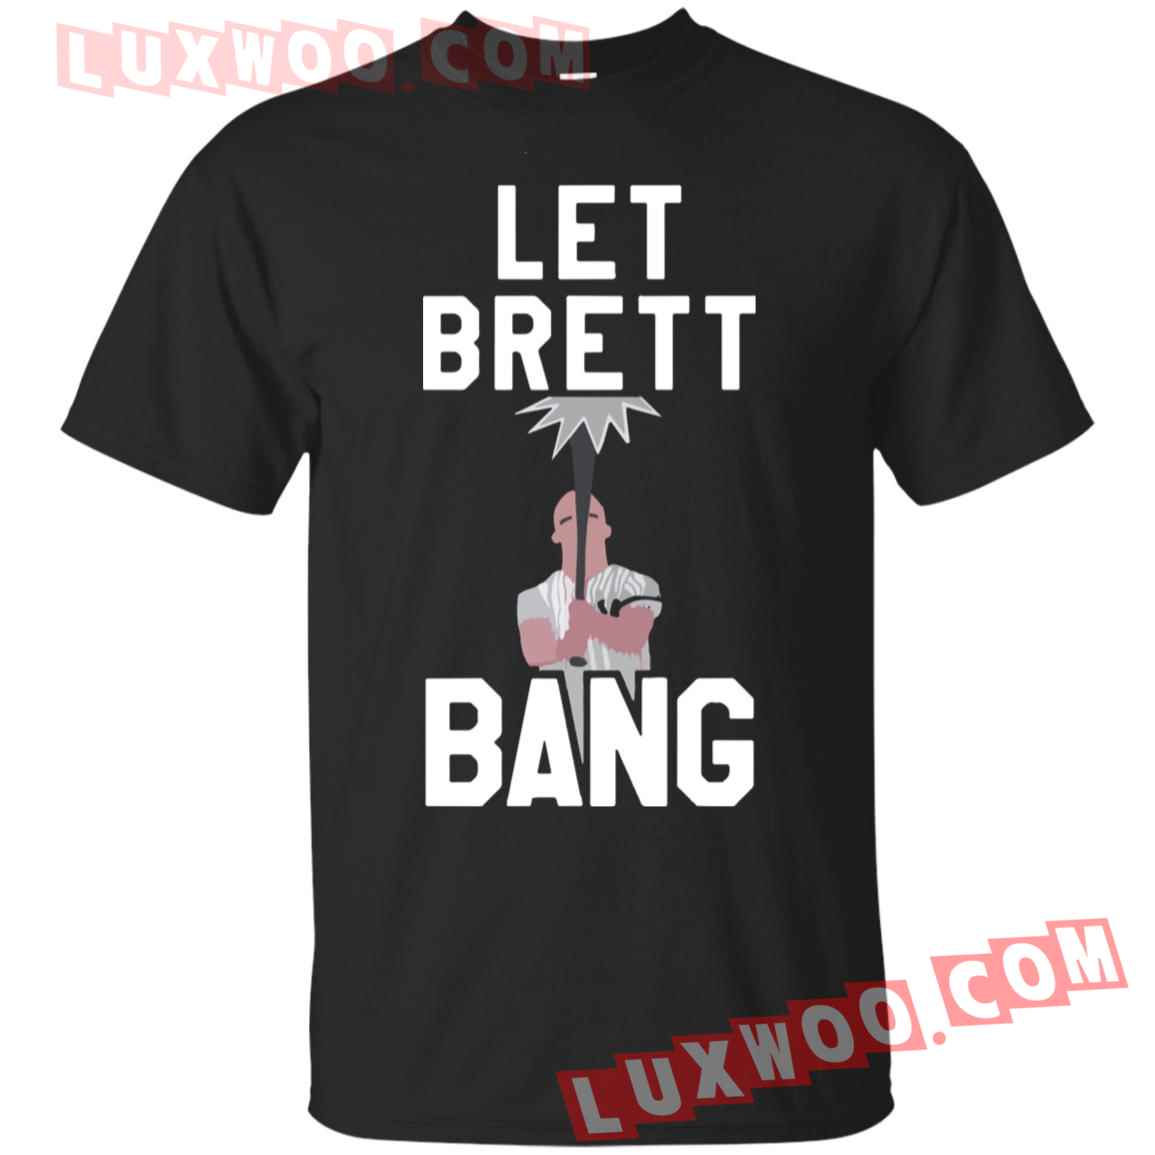 Let Brett Bang Shirt